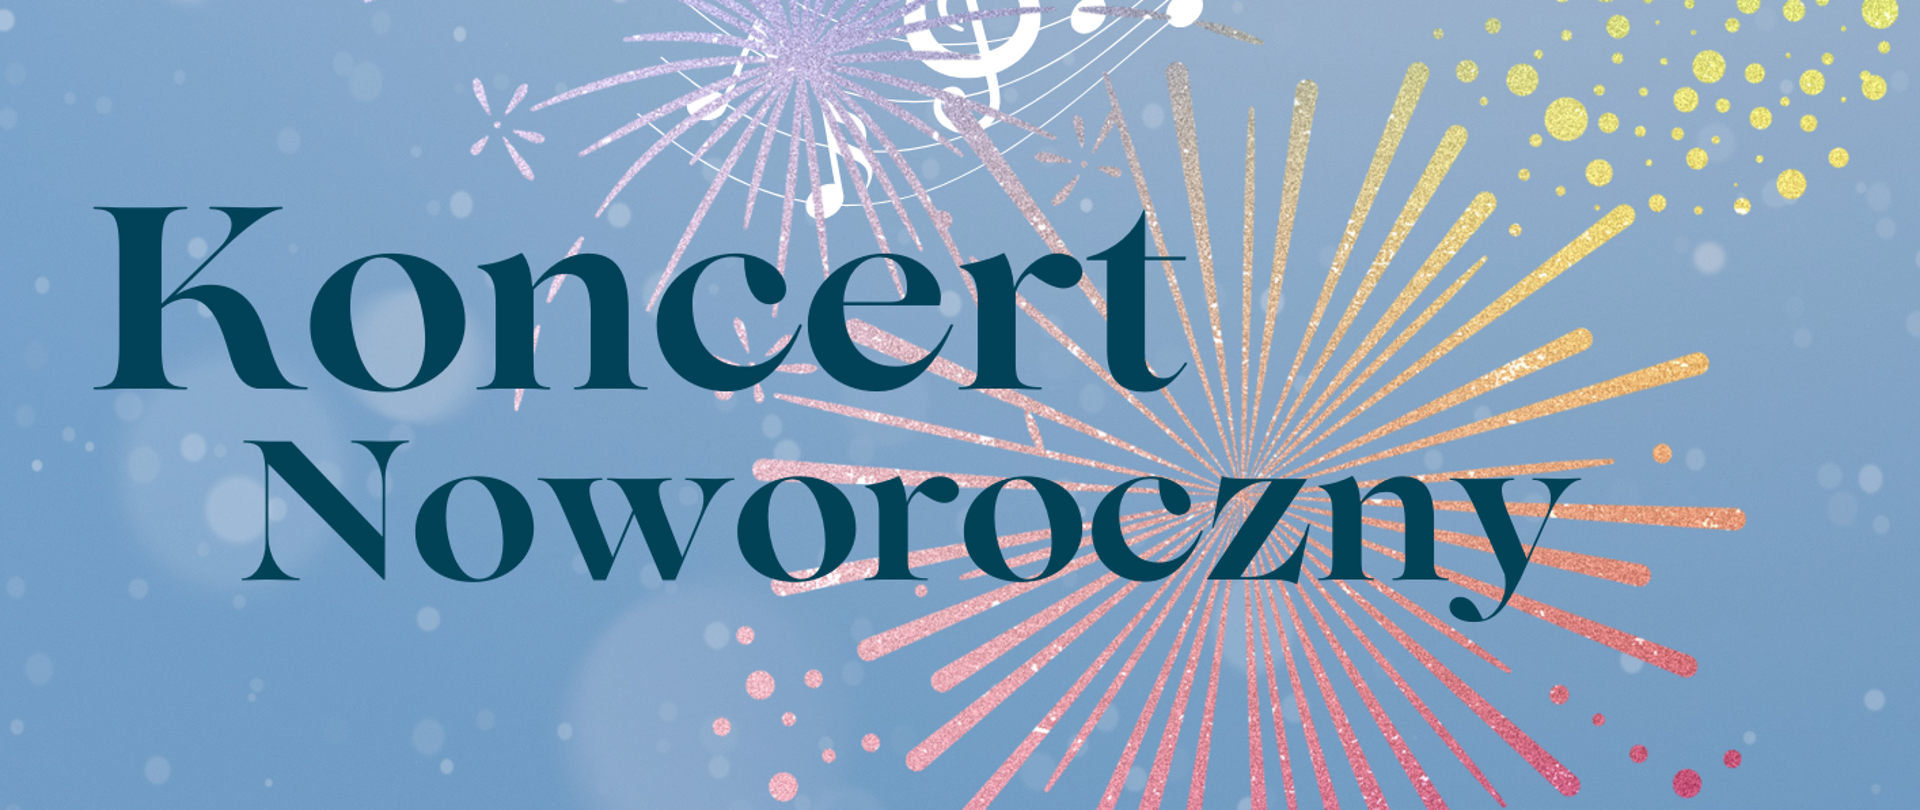 plakat w niebieskiej tonacji z elementami graficznymi rozbłysków sztucznych ogni i napisami: "Koncert Noworoczny" oraz "10.01, godz. 17:00, sala koncertowa"